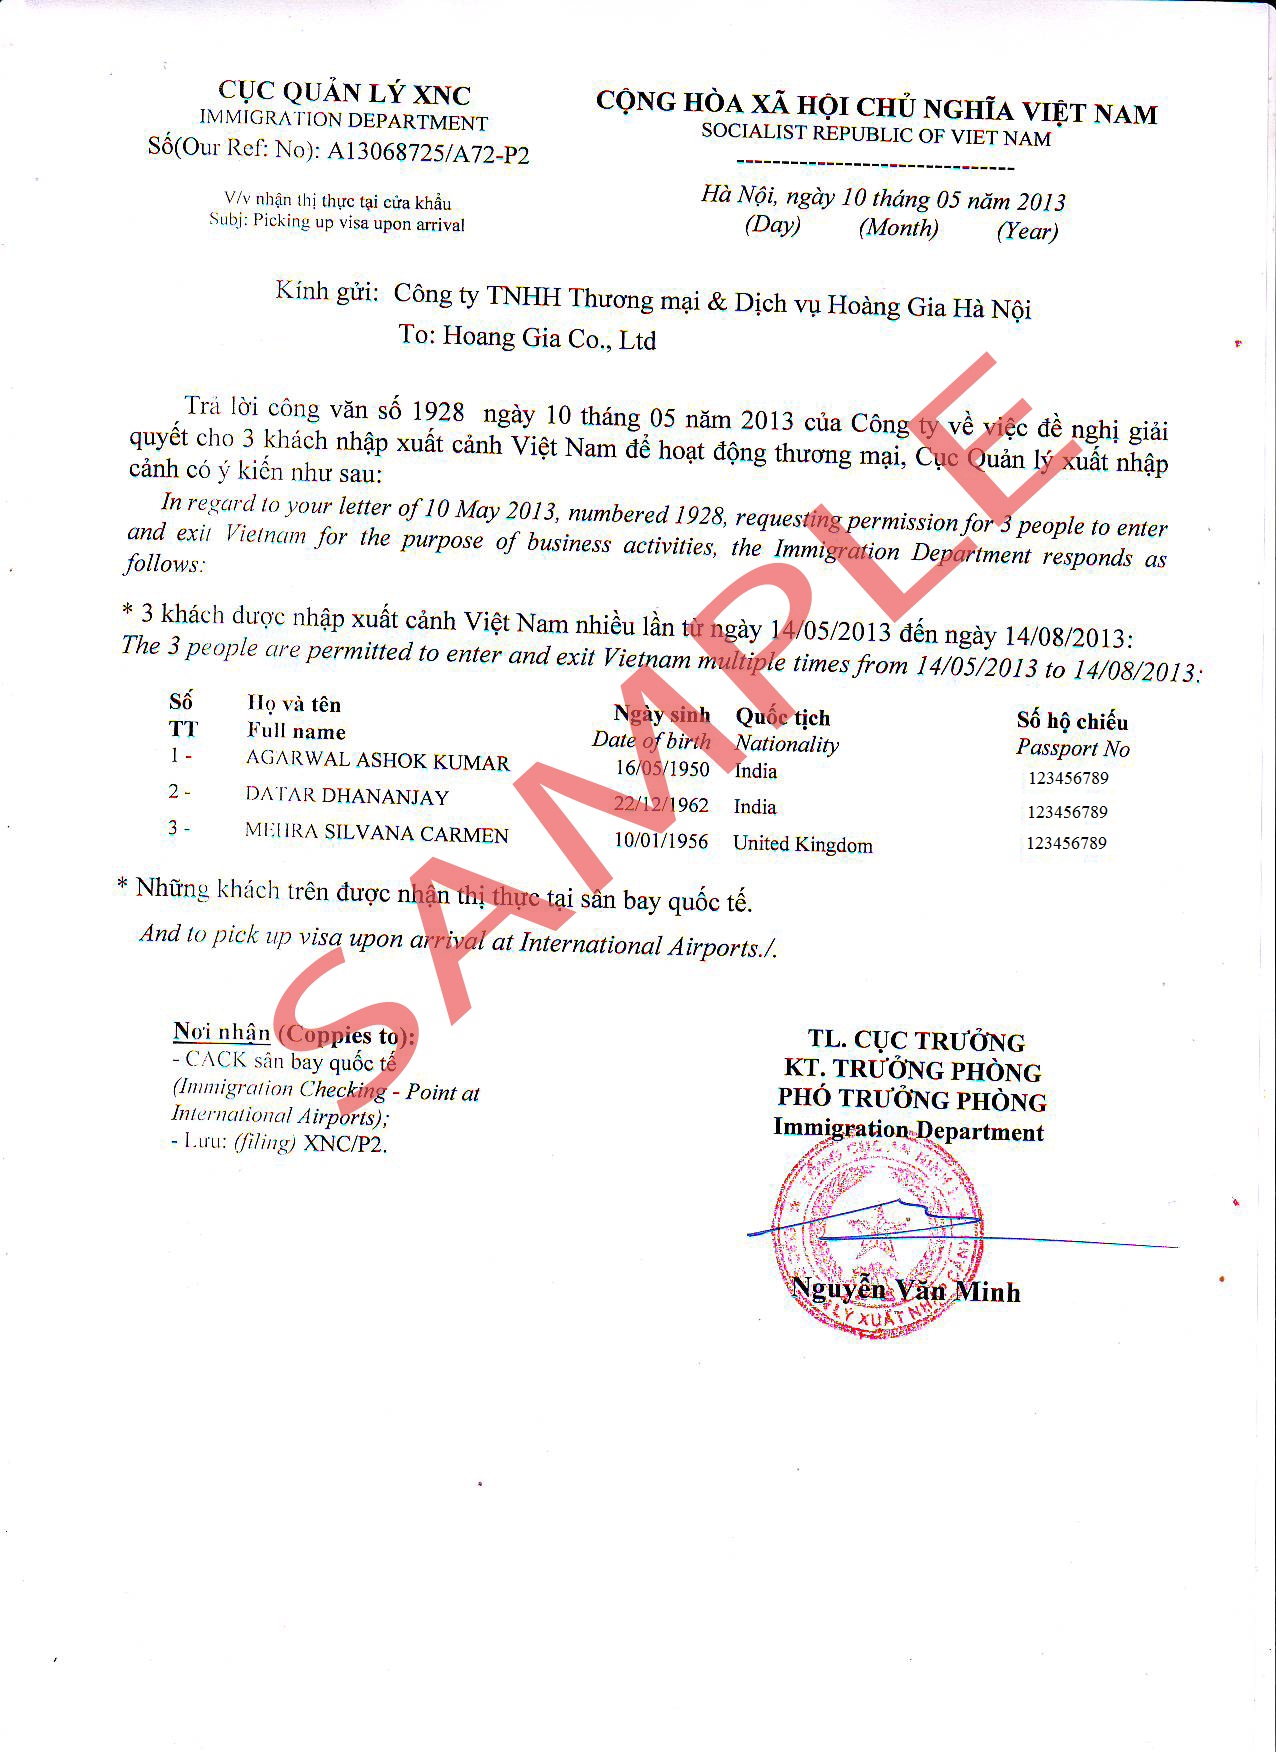 2. Carta de aprobación del visado de Vietnam